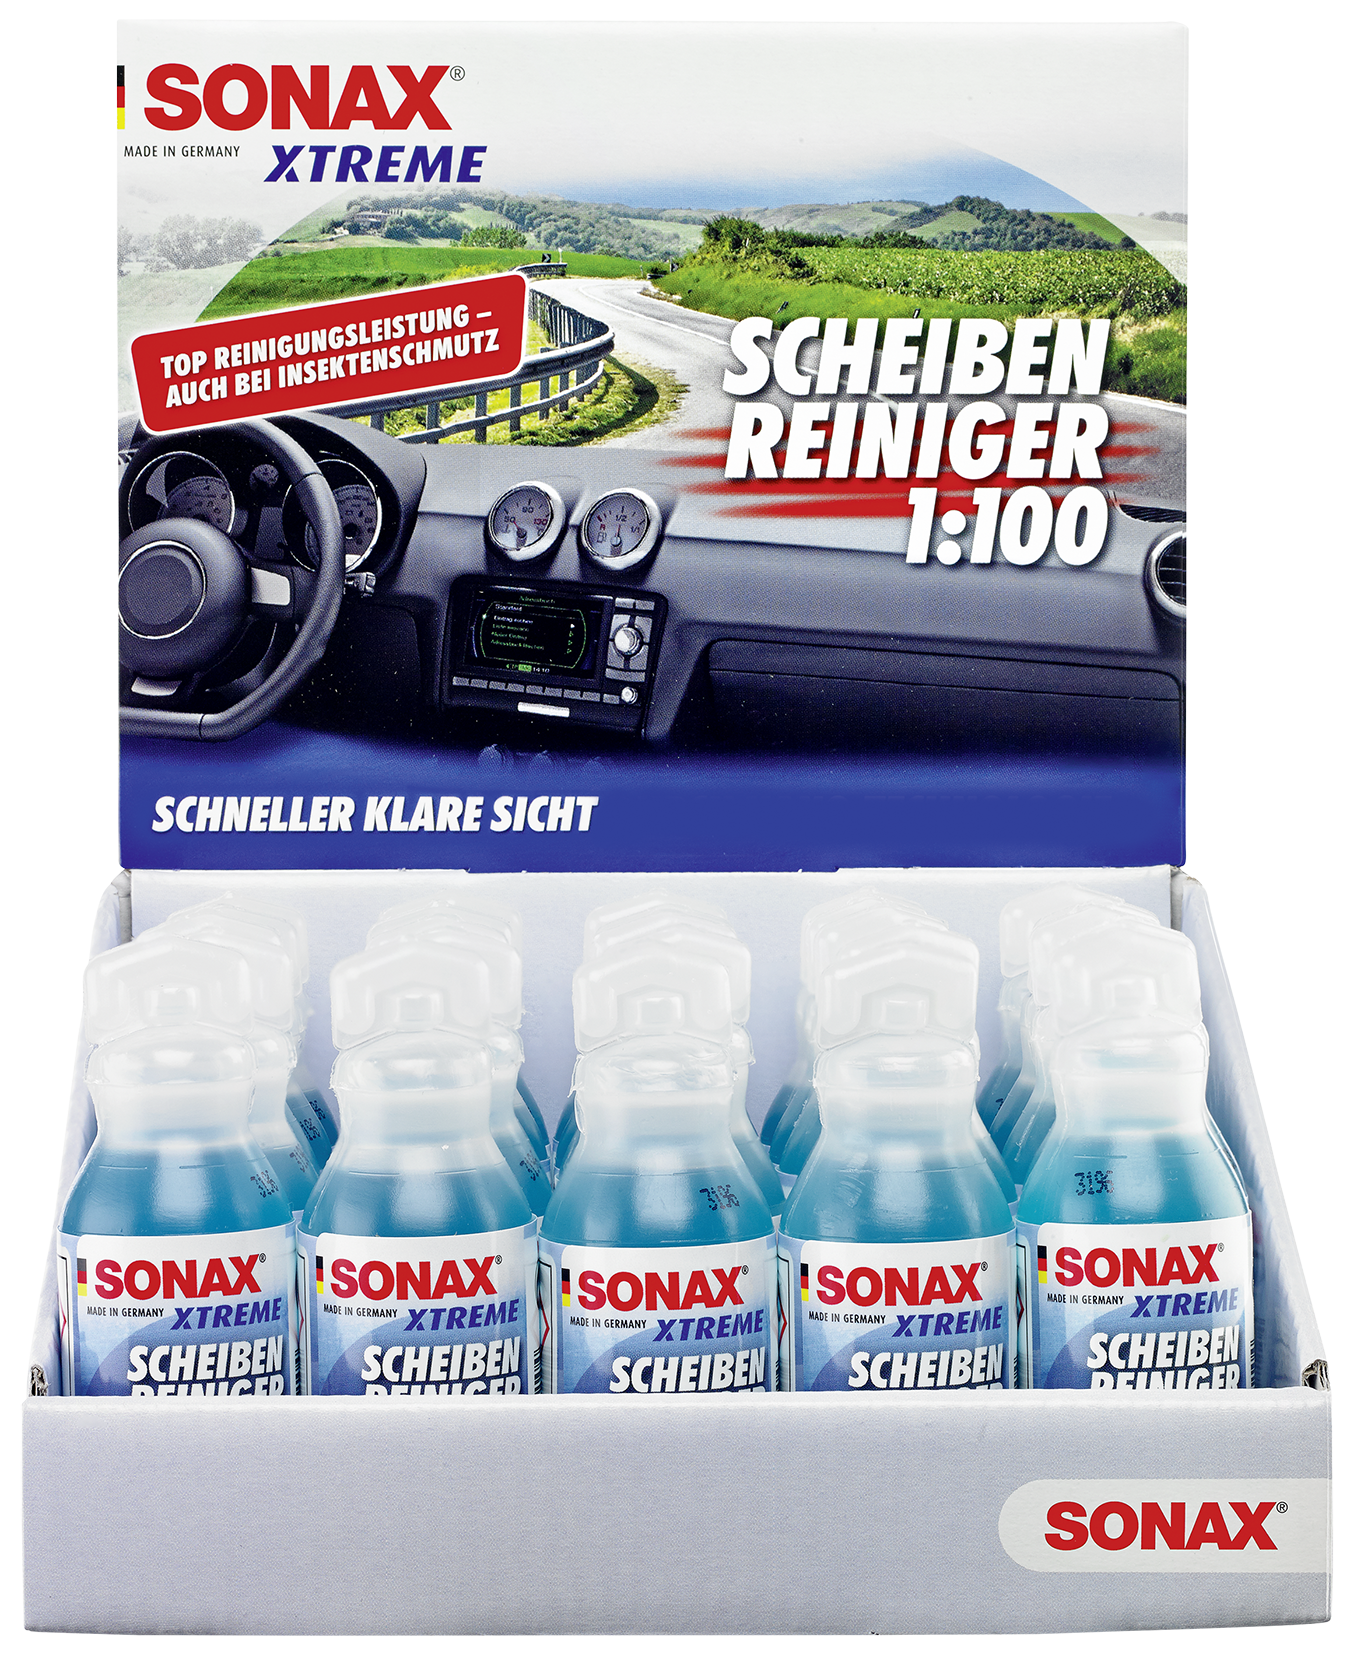 SONAX XTREME ScheibenReiniger Konzentrat 1:100 NanoPro 25 ml, Scheibenwaschanlage, Reinigung & Pflege, Rund ums Fahrzeug